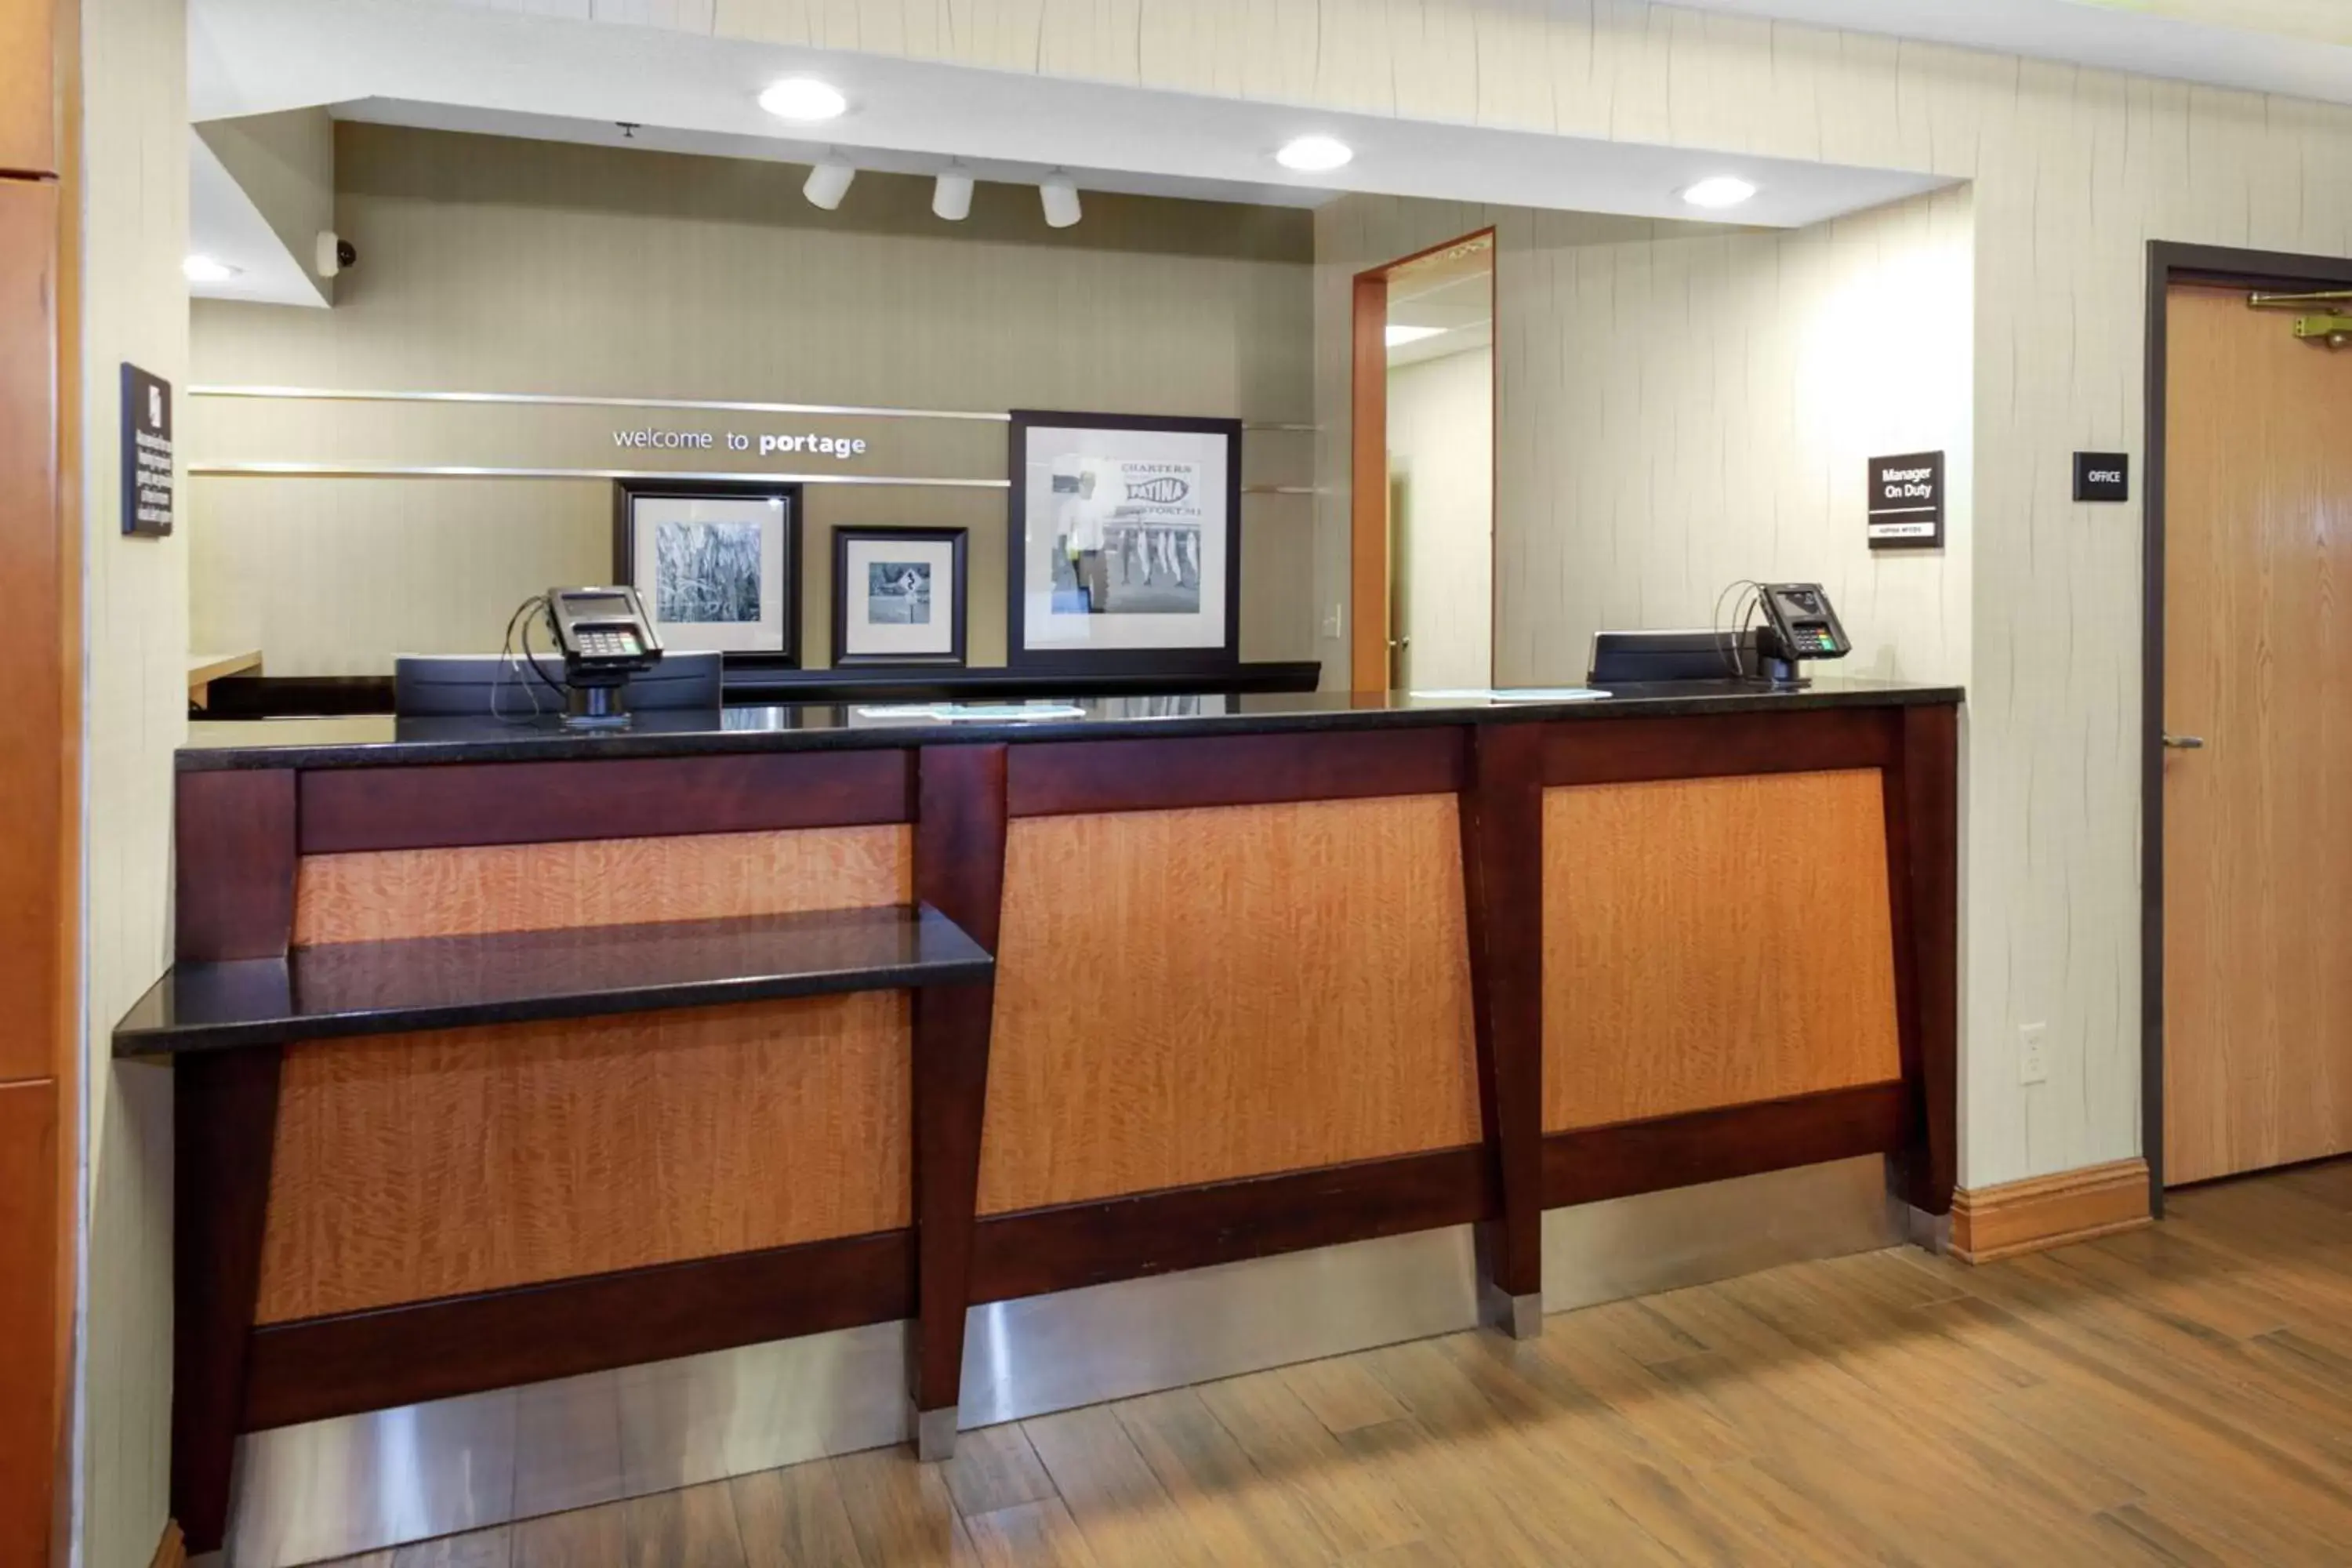 Lobby or reception, Lobby/Reception in Hampton Inn Portage